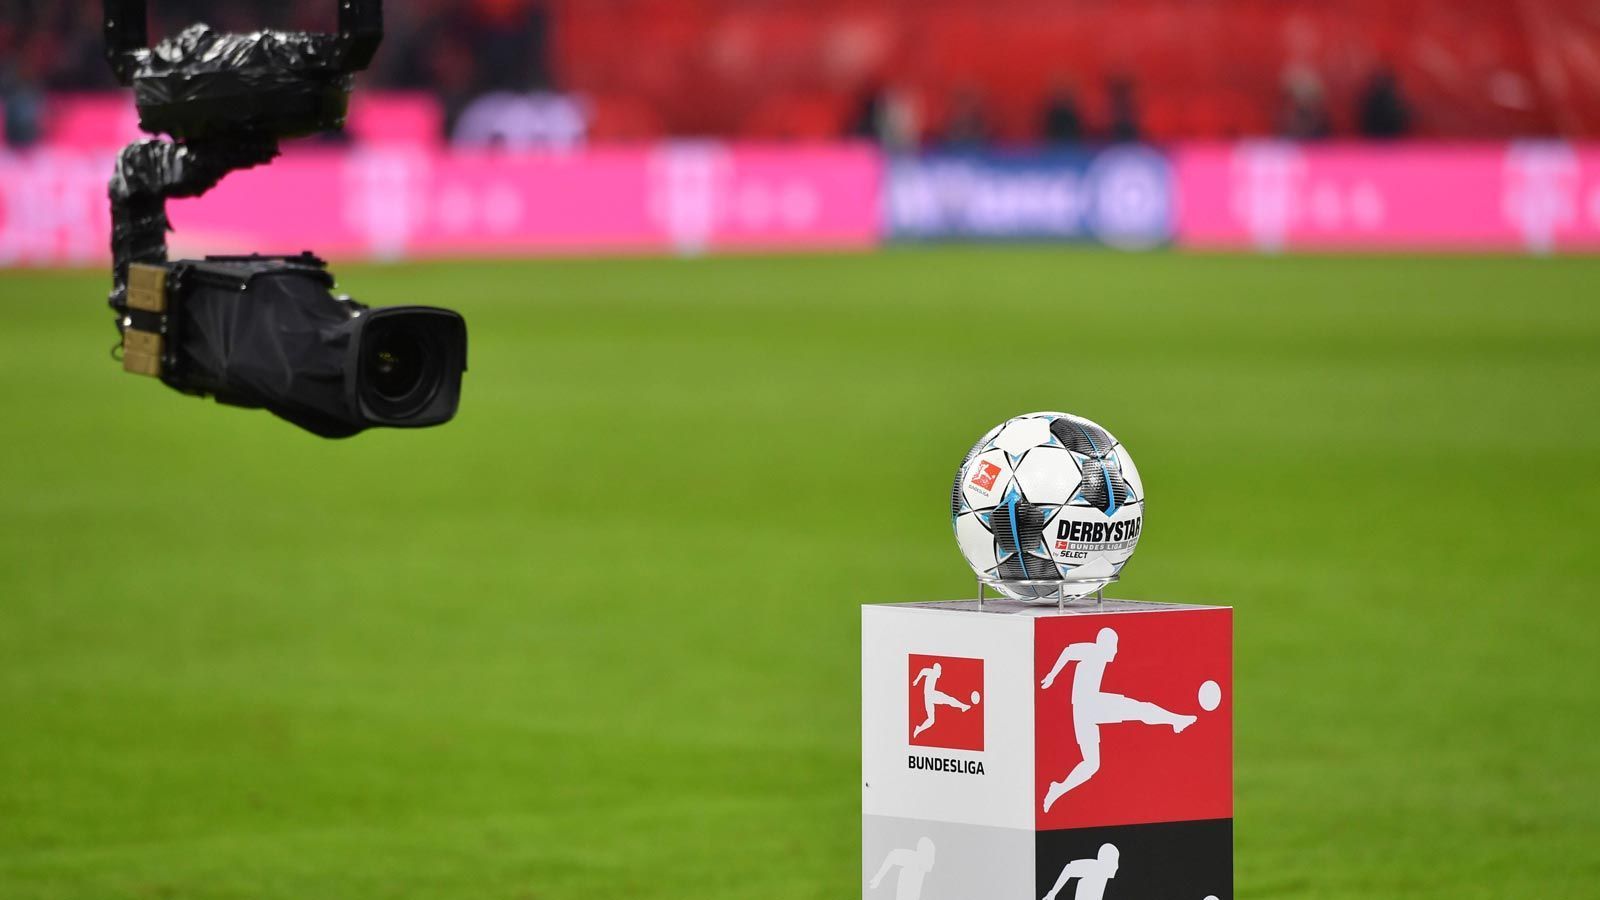 Bundesliga live Wer zeigt heute wann welche Spiele am 4